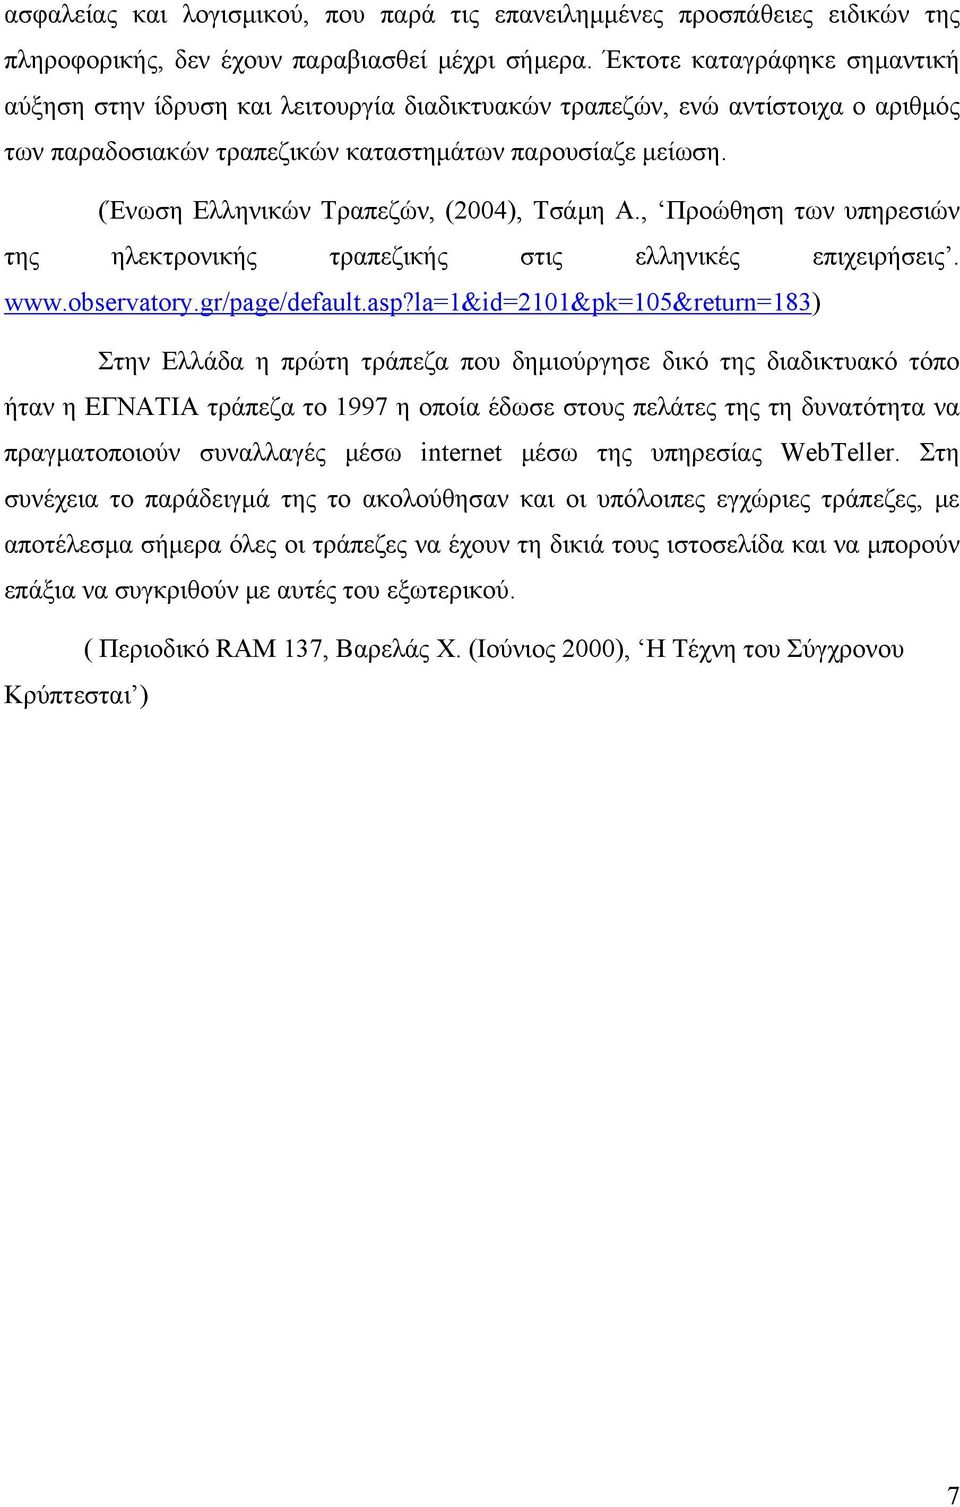 (Ένωση Ελληνικών Τραπεζών, (2004), Τσάμη Α., Προώθηση των υπηρεσιών της ηλεκτρονικής τραπεζικής στις ελληνικές επιχειρήσεις. www.observatory.gr/page/default.asp?